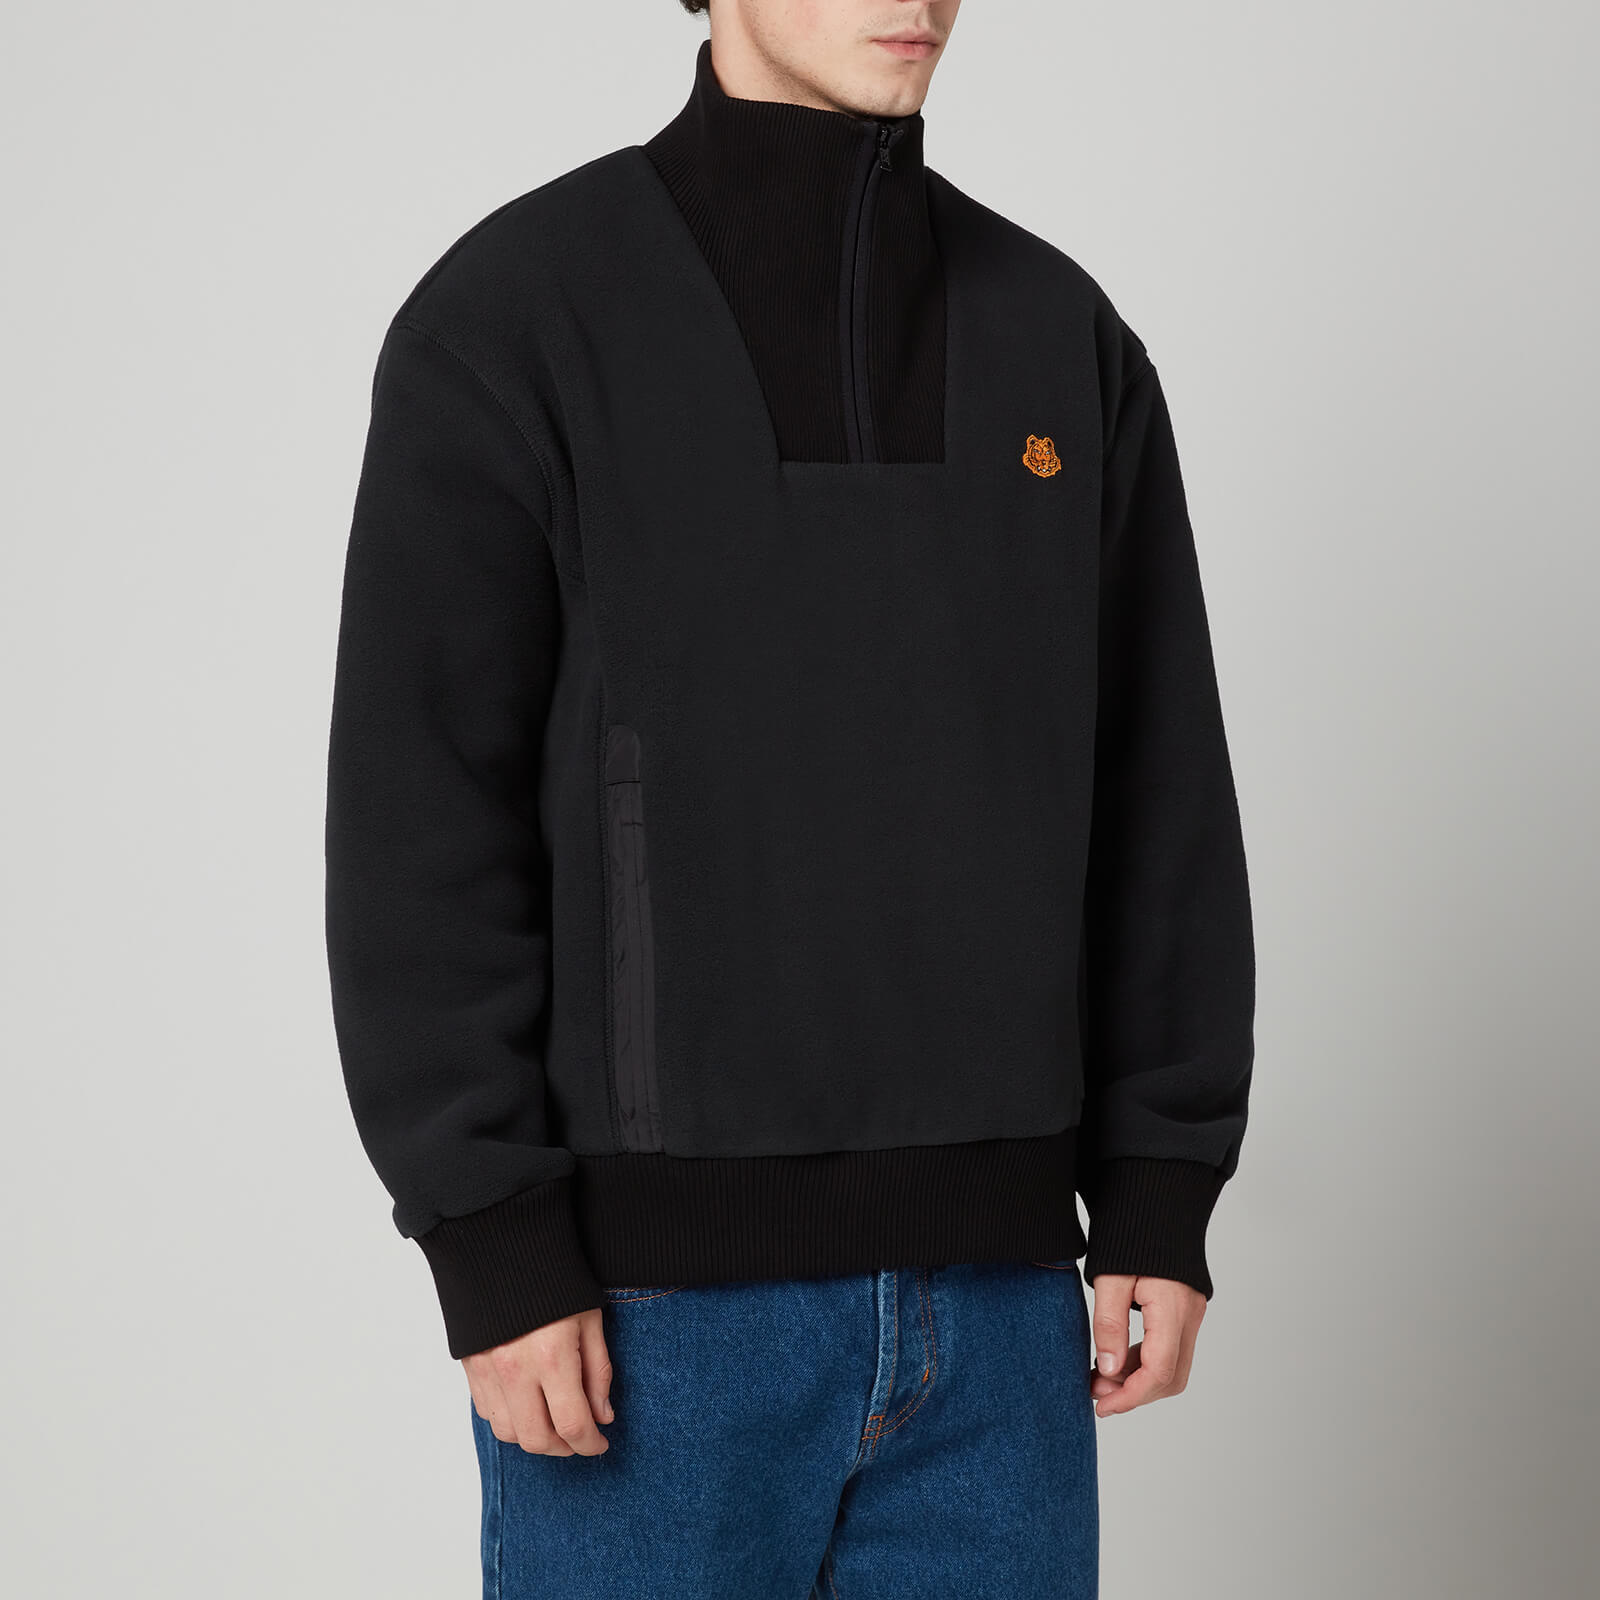 KENZO Men's Polar High Neck Fleece Jacket - Black - XS